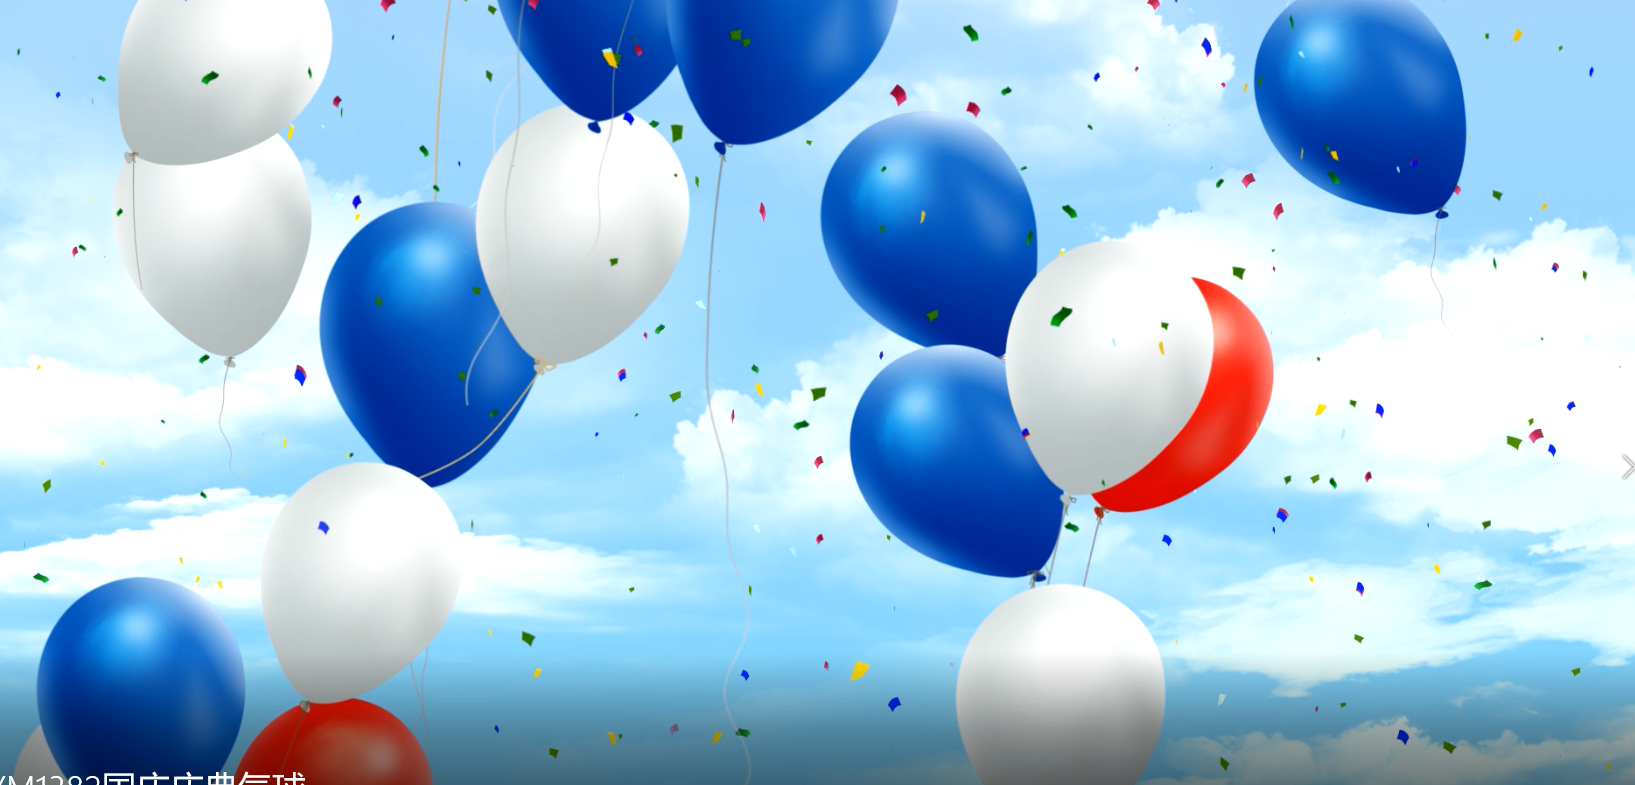 气球飞升天空、气球的海洋、节日气球、卡通气球、心形、国庆、涂鸦、线条、梦幻等各类气球的动态背景视频_视频说明书